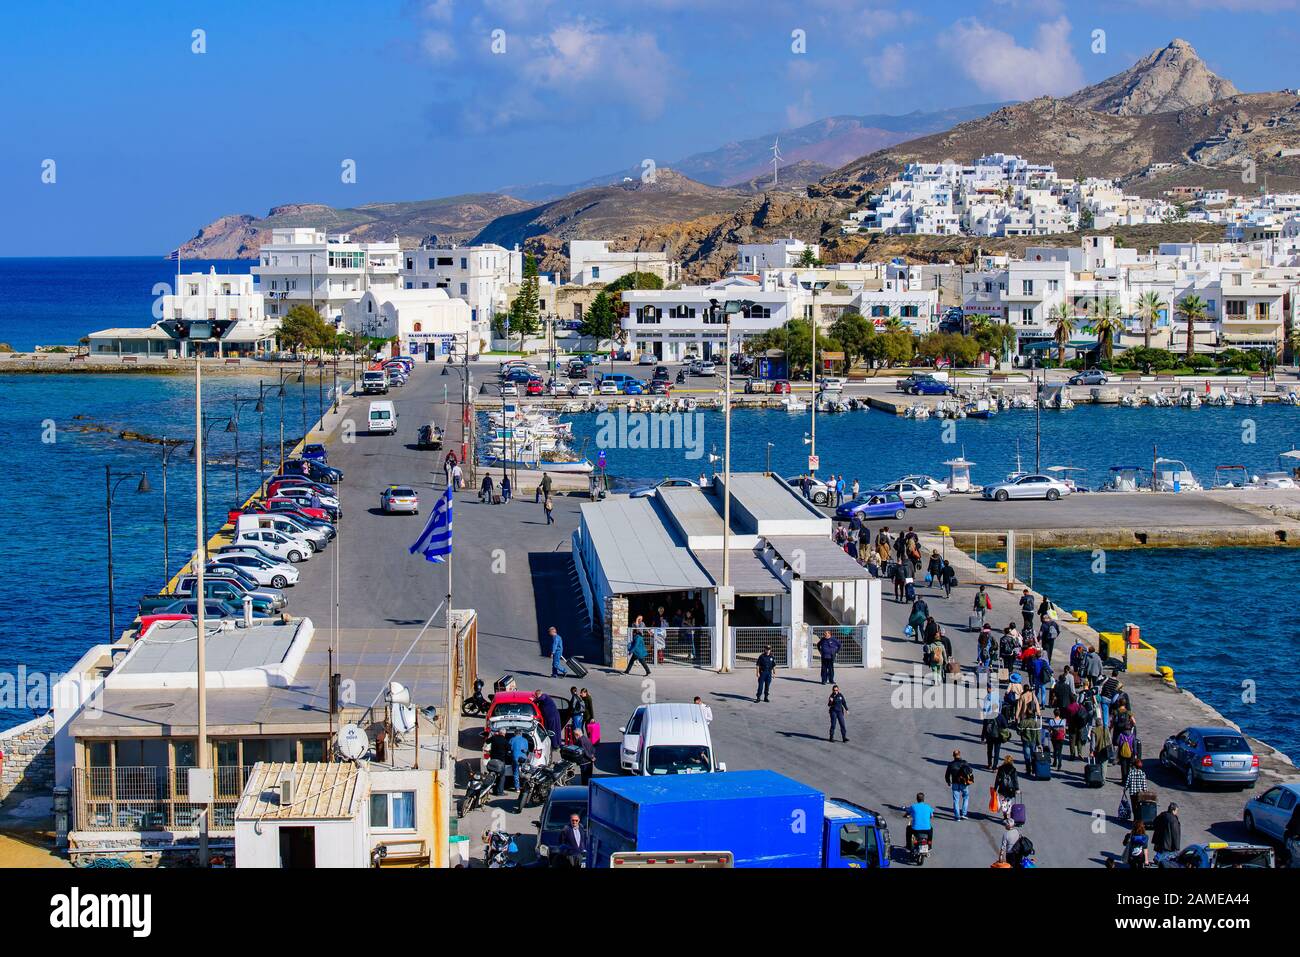 Hafen von Naxos, eine griechische Insel in der Ägäis, Griechenland Stockfoto